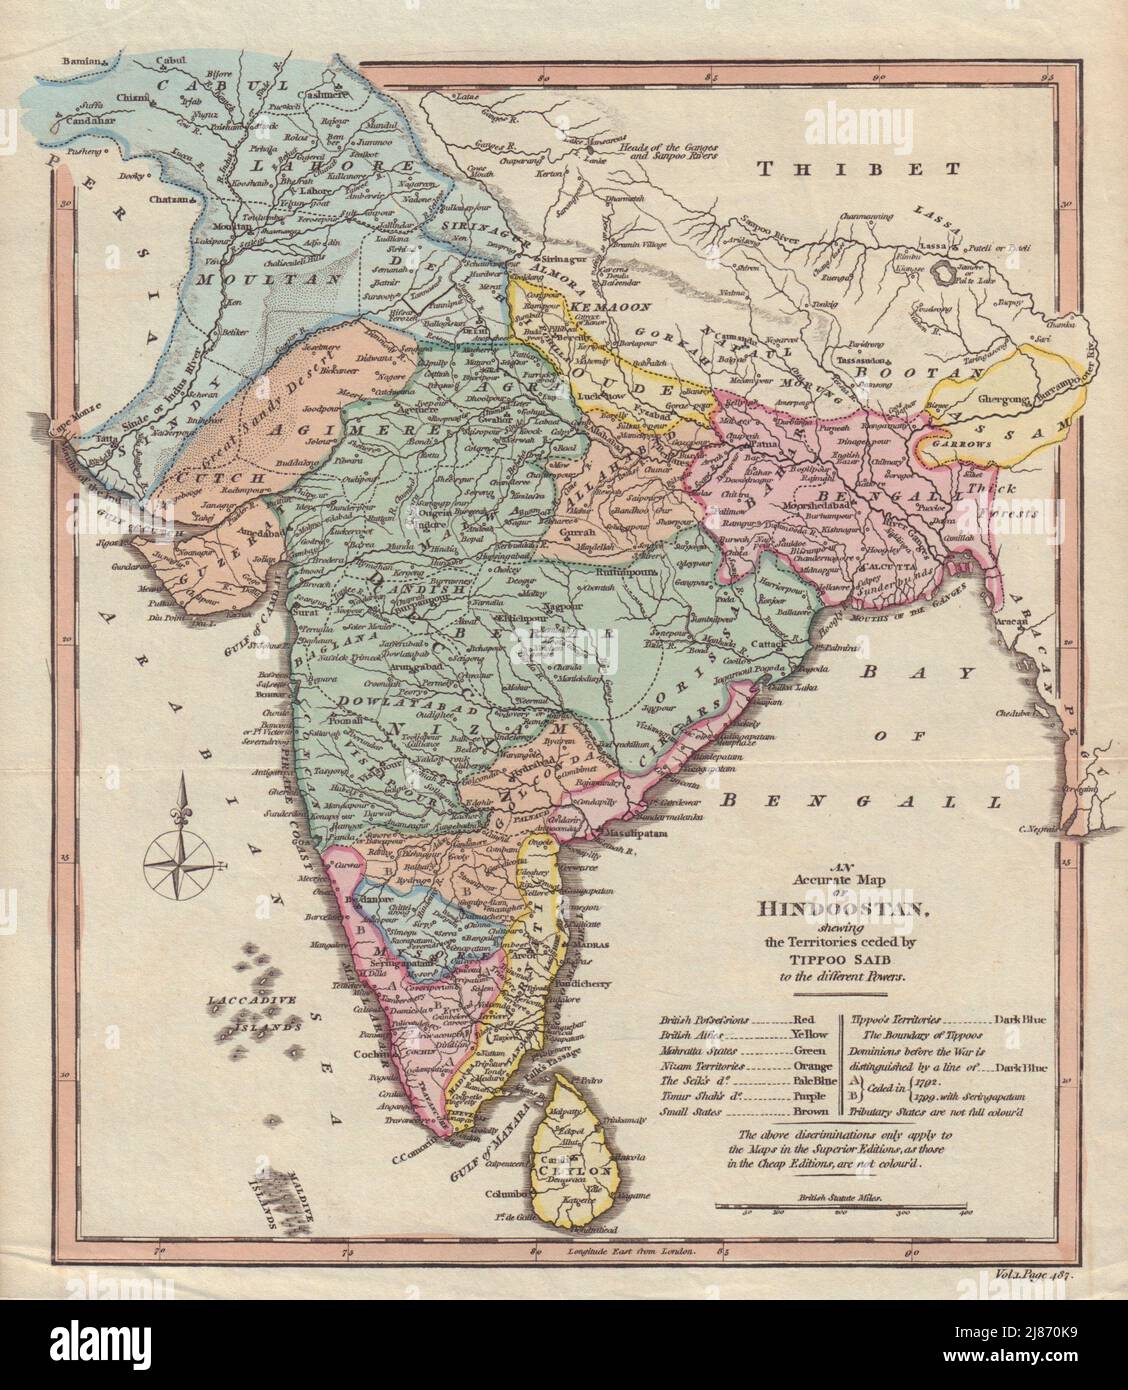 Hindoostan conversant les territoires cédés par Tipoo SAIB. Inde. CARTE COOKE 1817 Banque D'Images